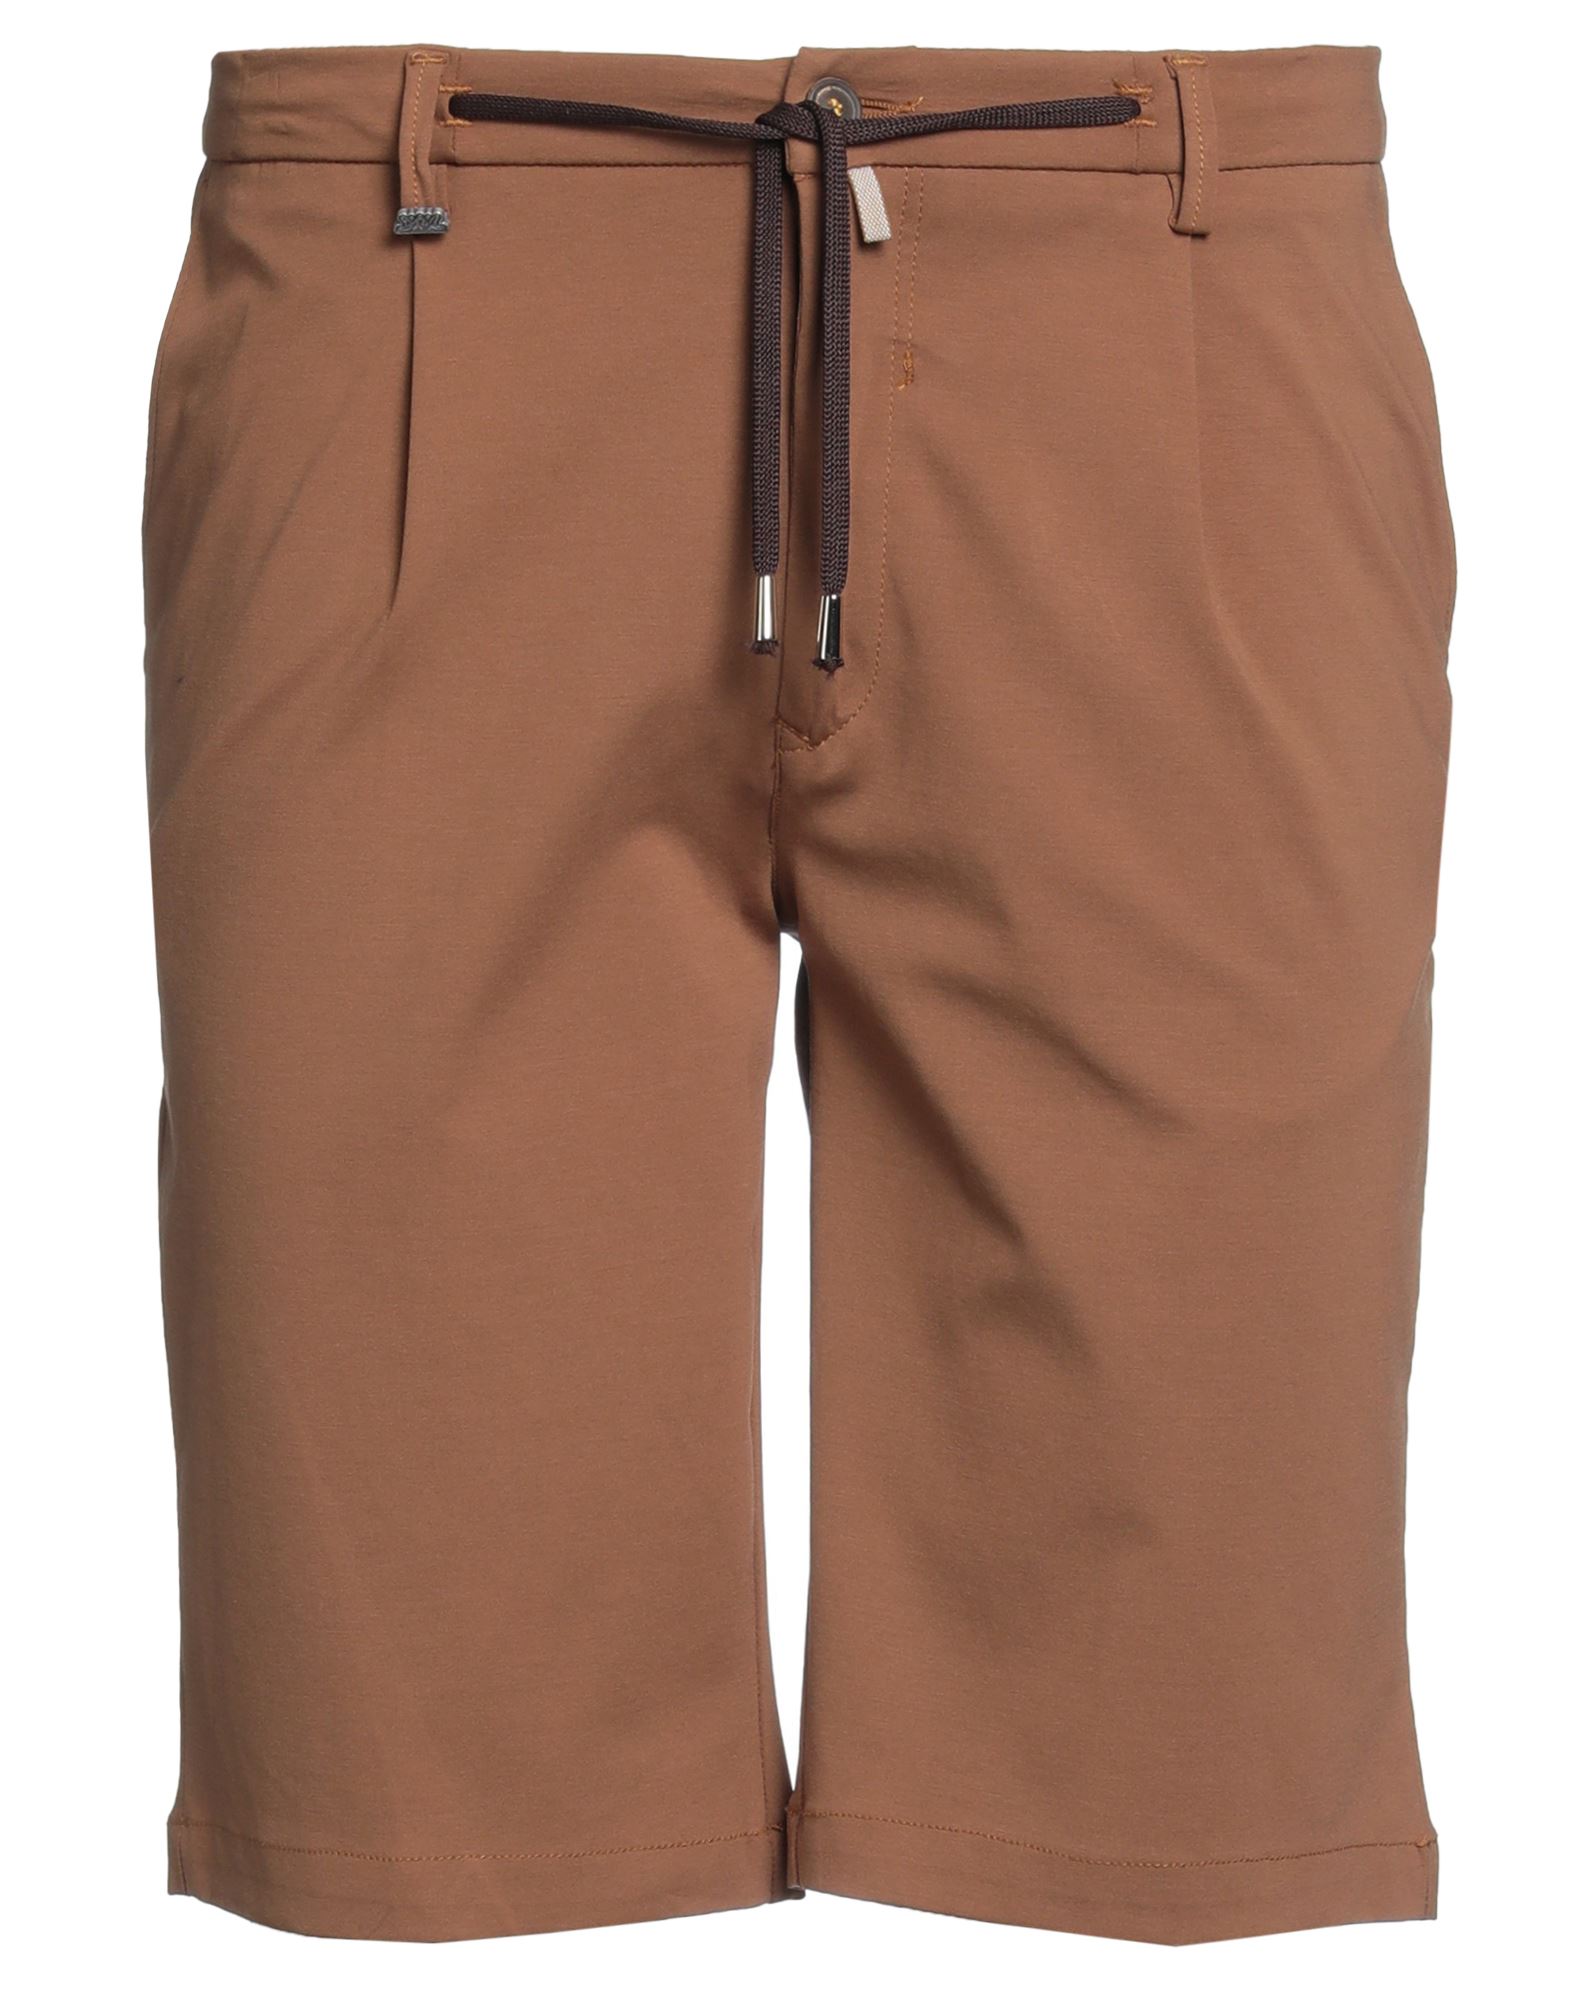 Barbati Man Shorts & Bermuda Shorts Camel Size 40 Cotton, Polyamide, Elastane In Beige